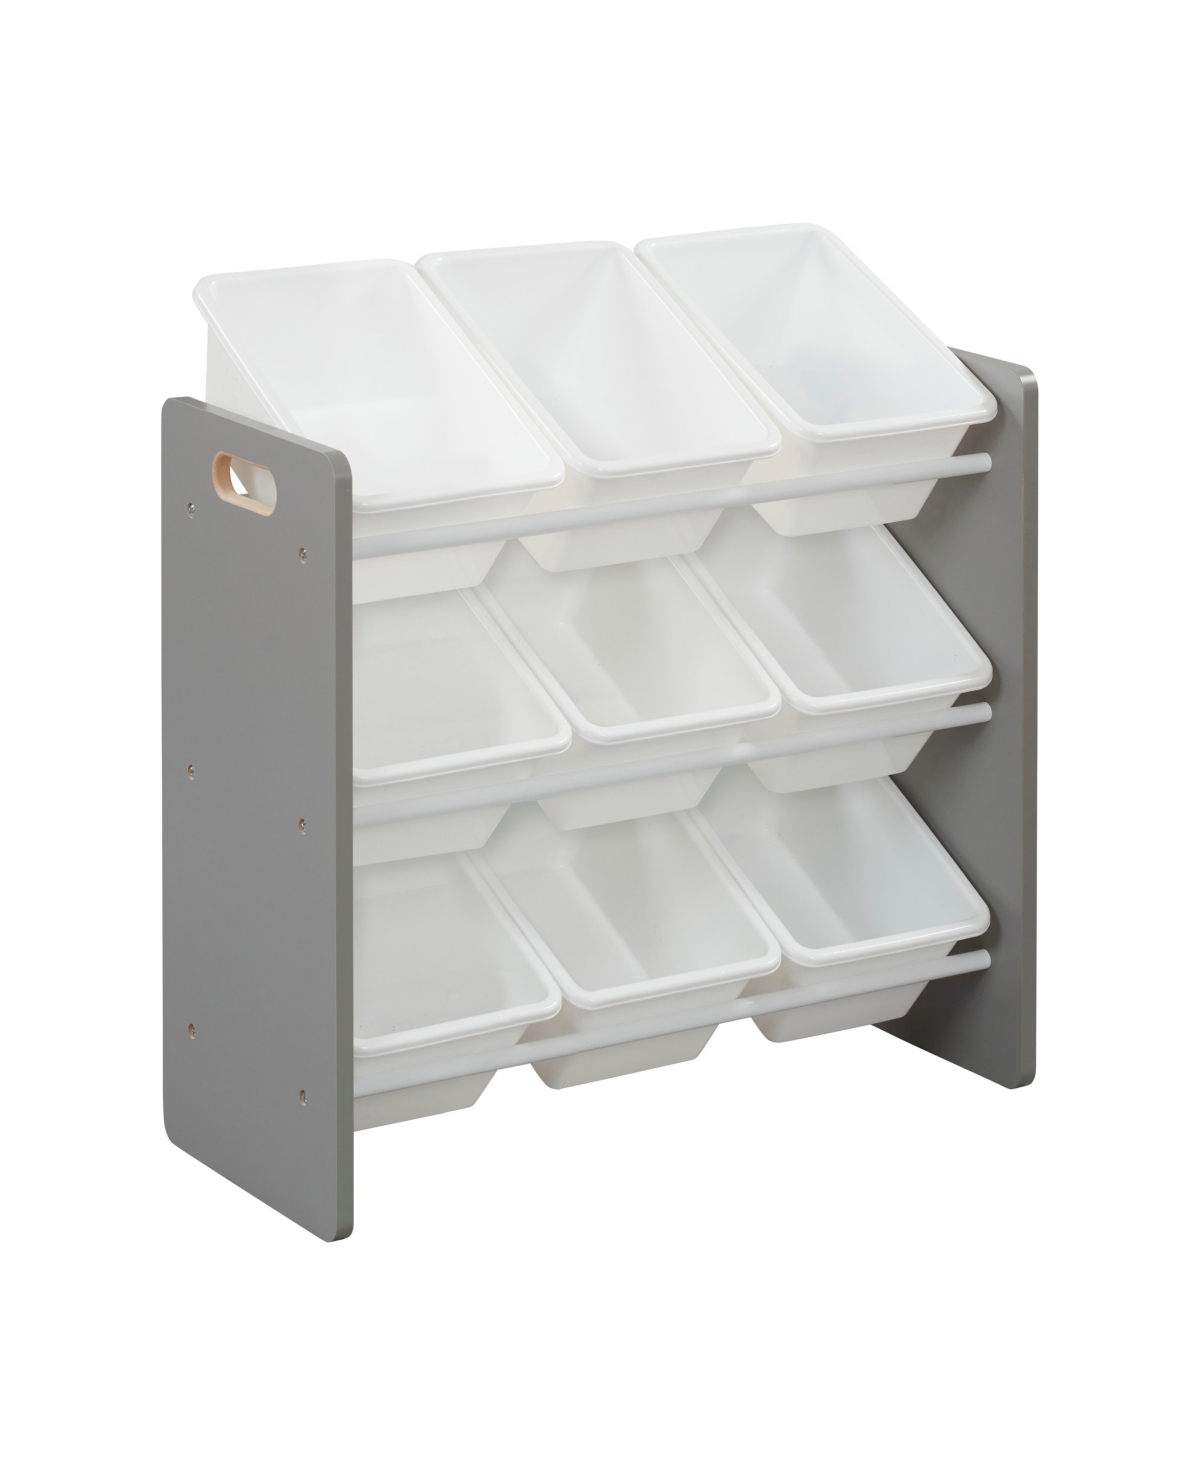 3-Tier Organizer with 9 Bins, Toy Storage, Grey/White - Dark natural/white